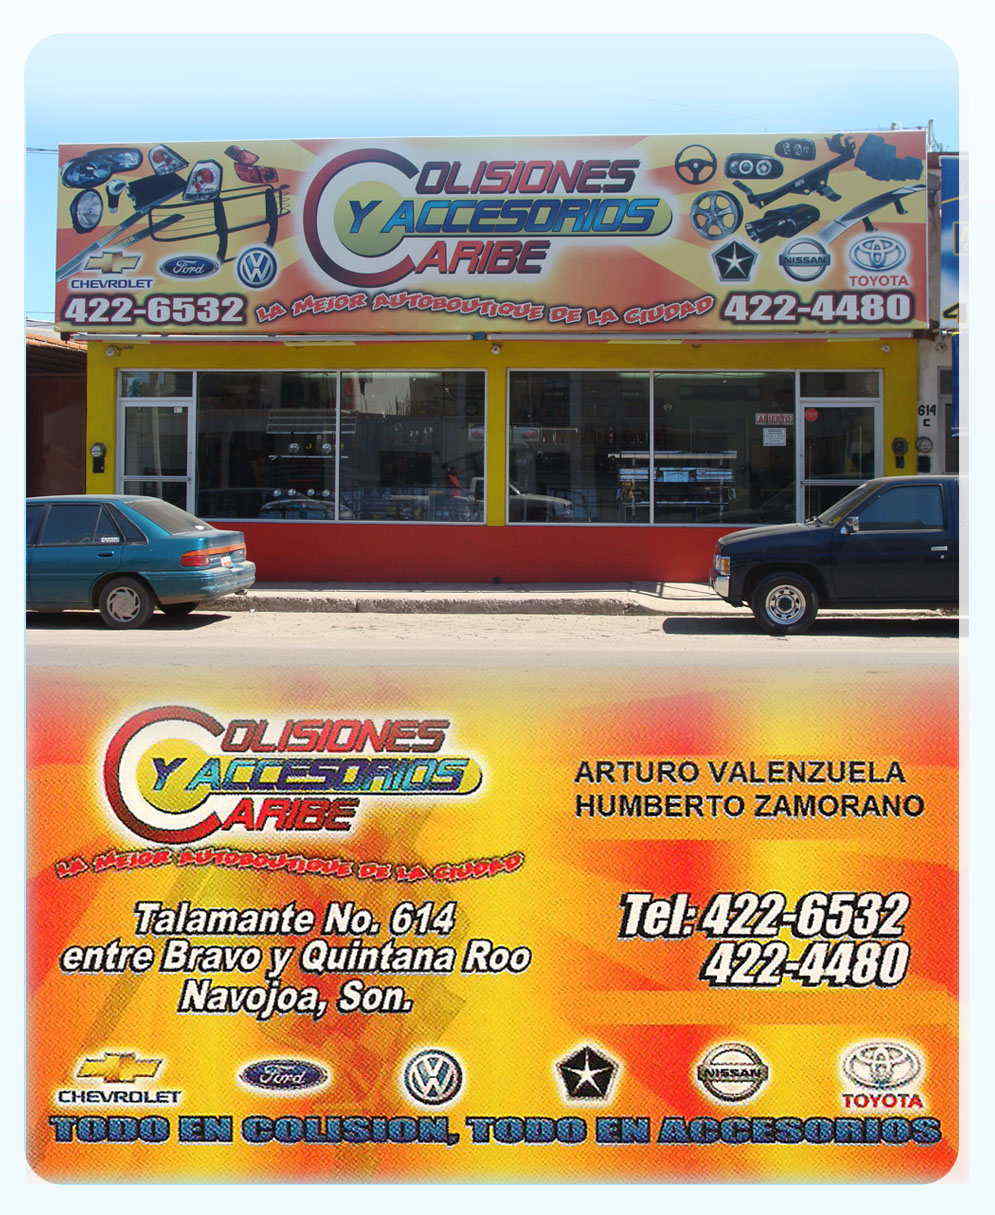 Colisiones y Accesorios Caribe-La mejor autoboutique de la ciudad..